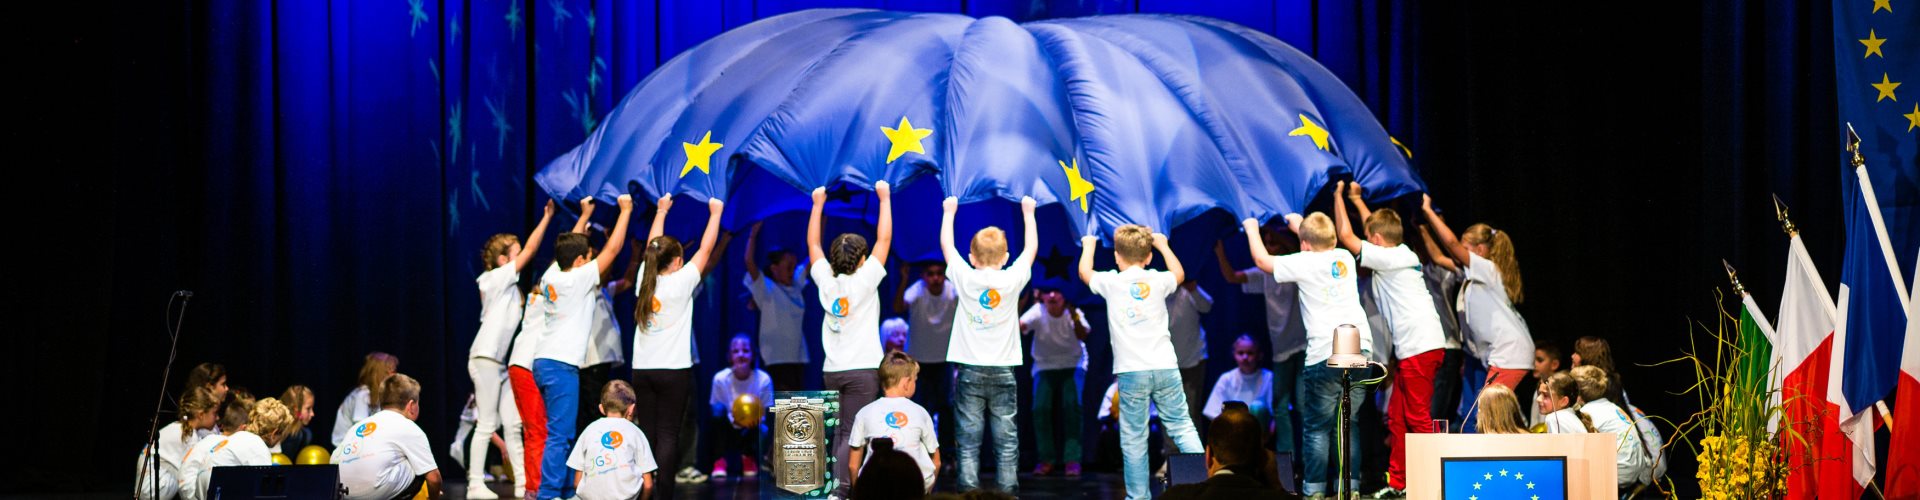 Grundschüler bei der Europapreisverleihung 2013 in Altötting